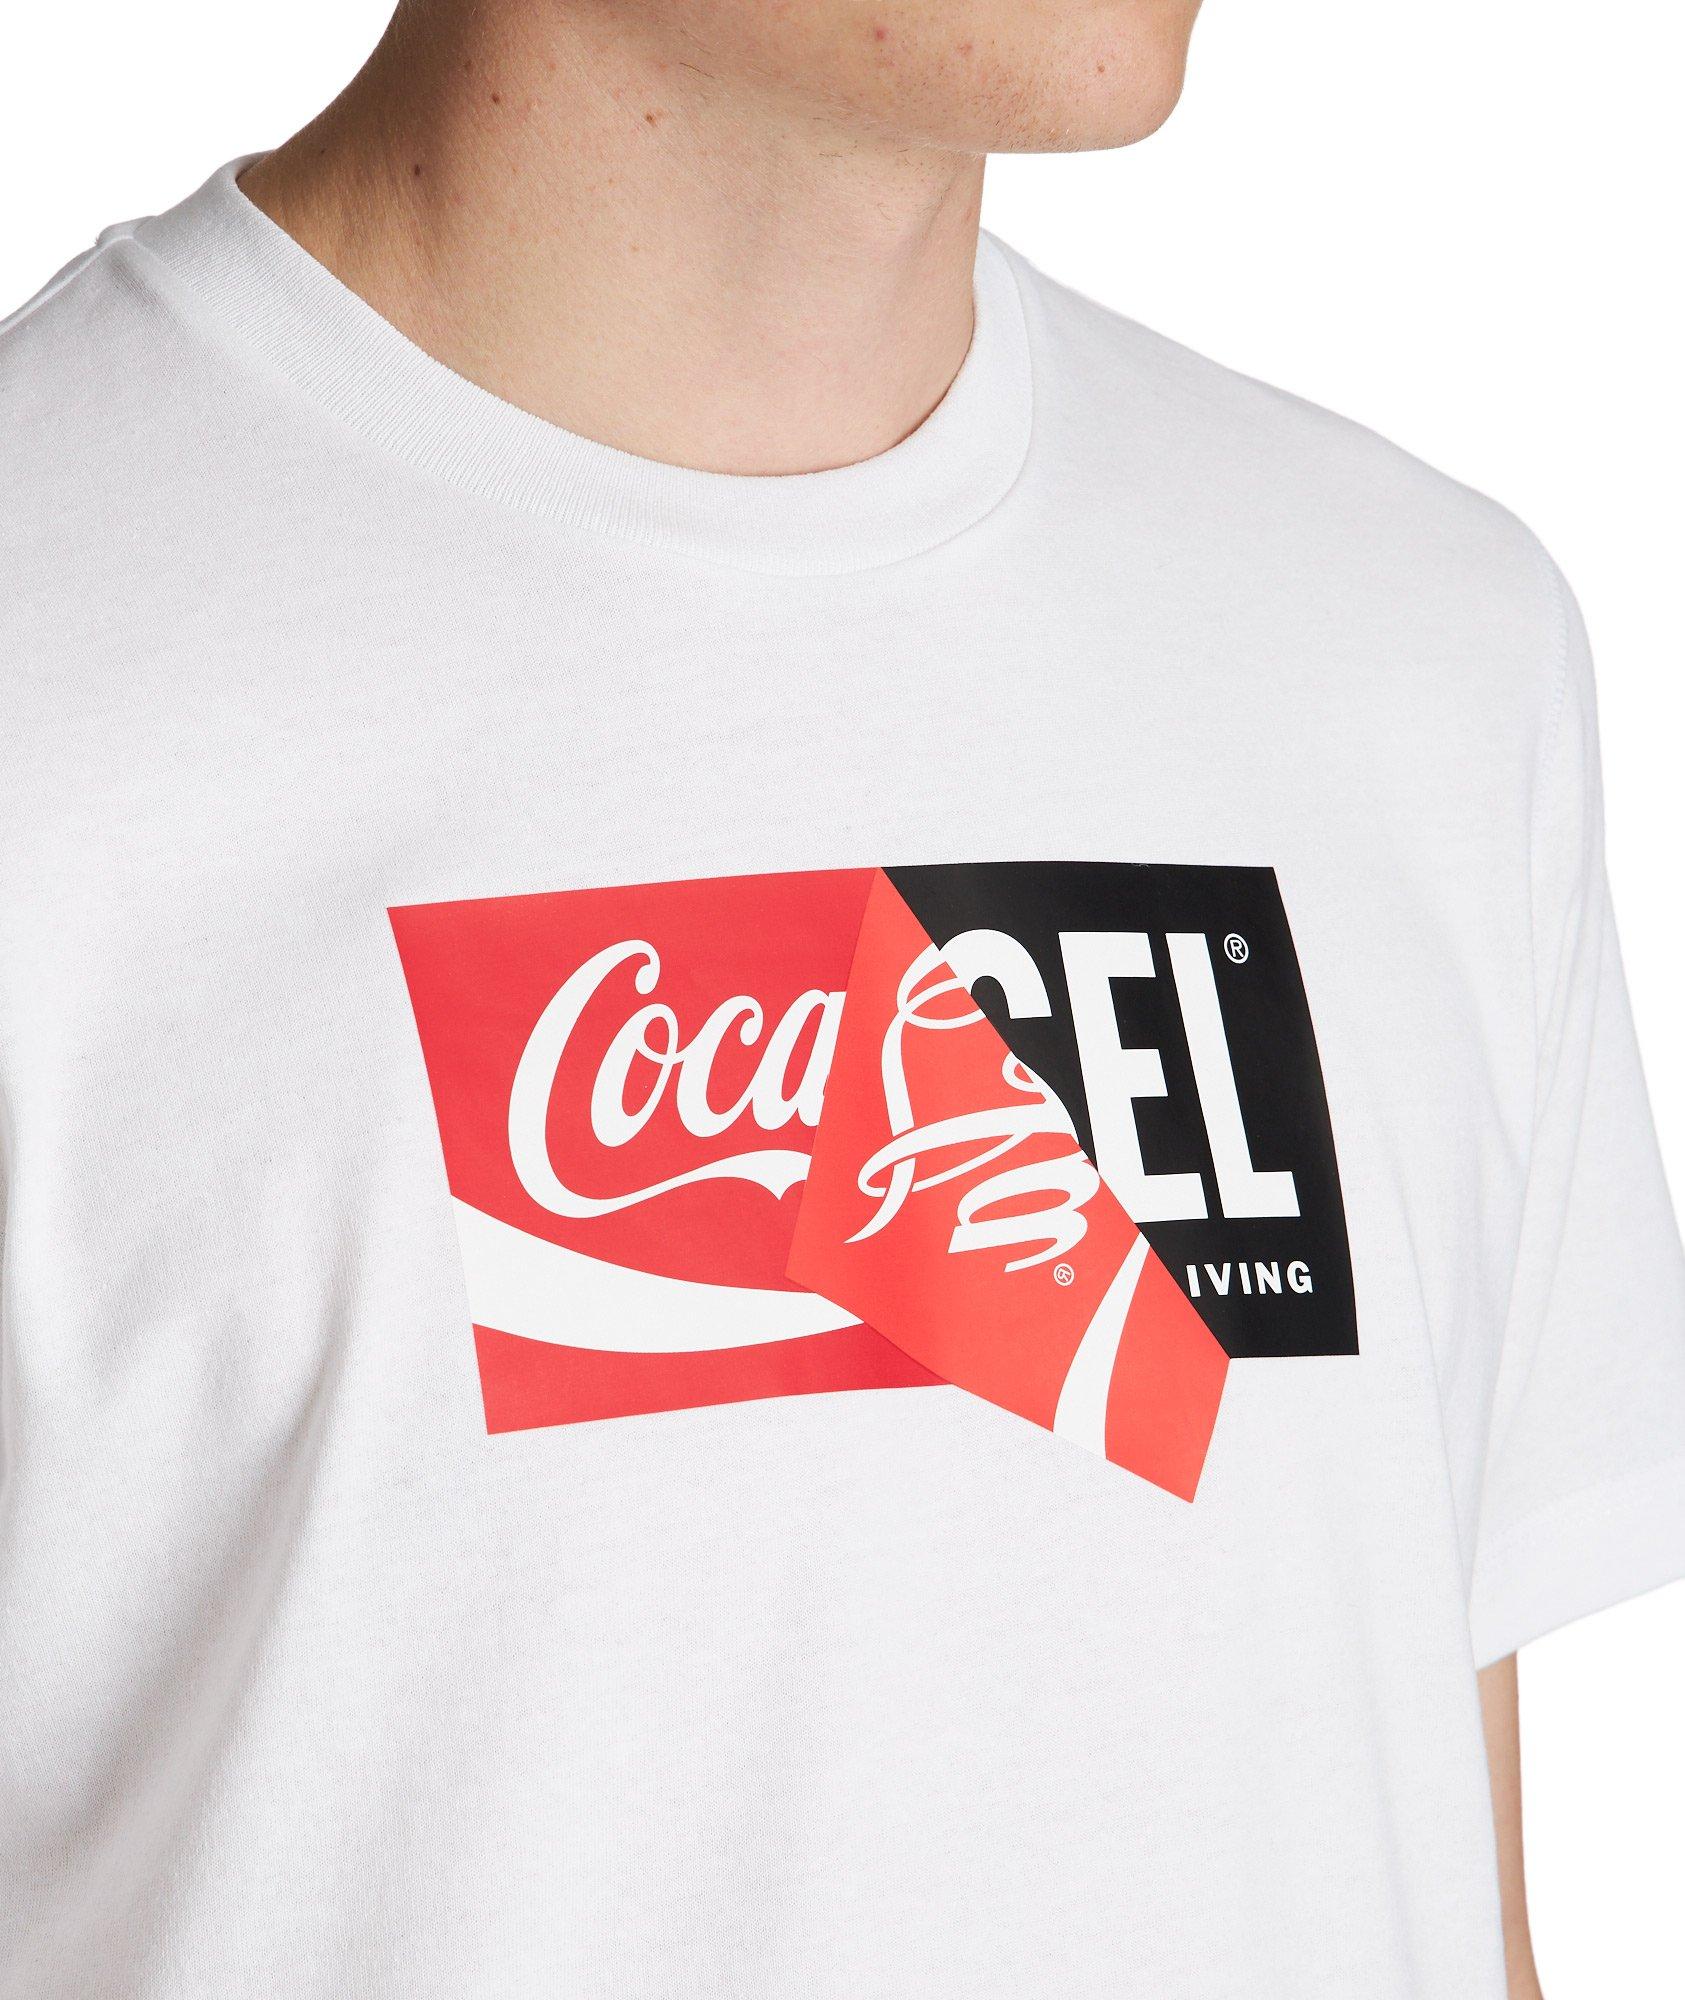 Coca-Cola Cotton-Blend T-Shirt image 1